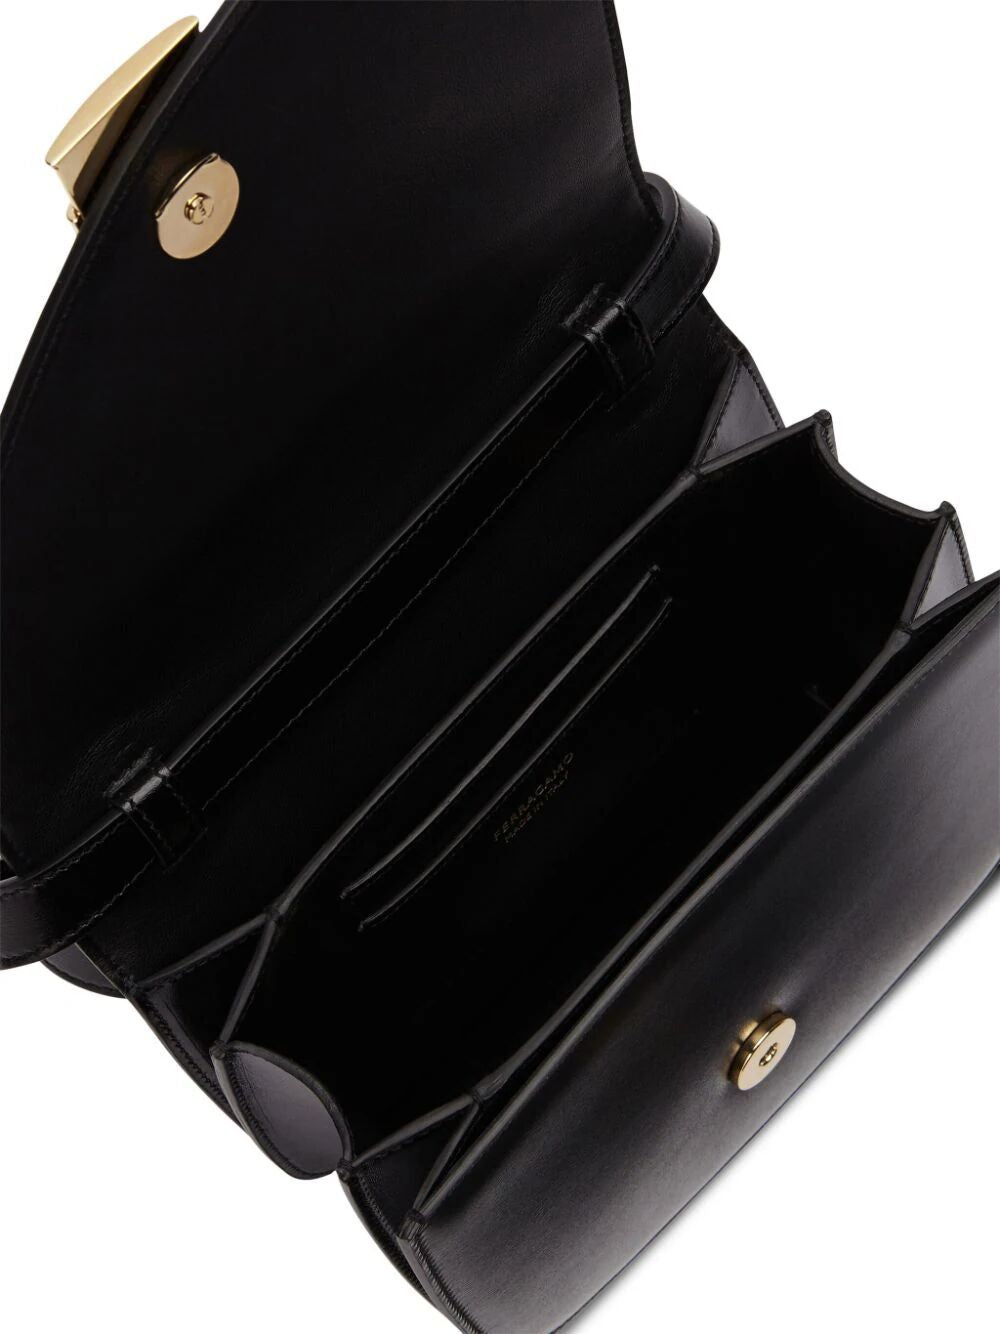 Túi đeo vai dạng hộp, có viền không đối xứng, được làm bằng da bê màu đen cho phụ nữ